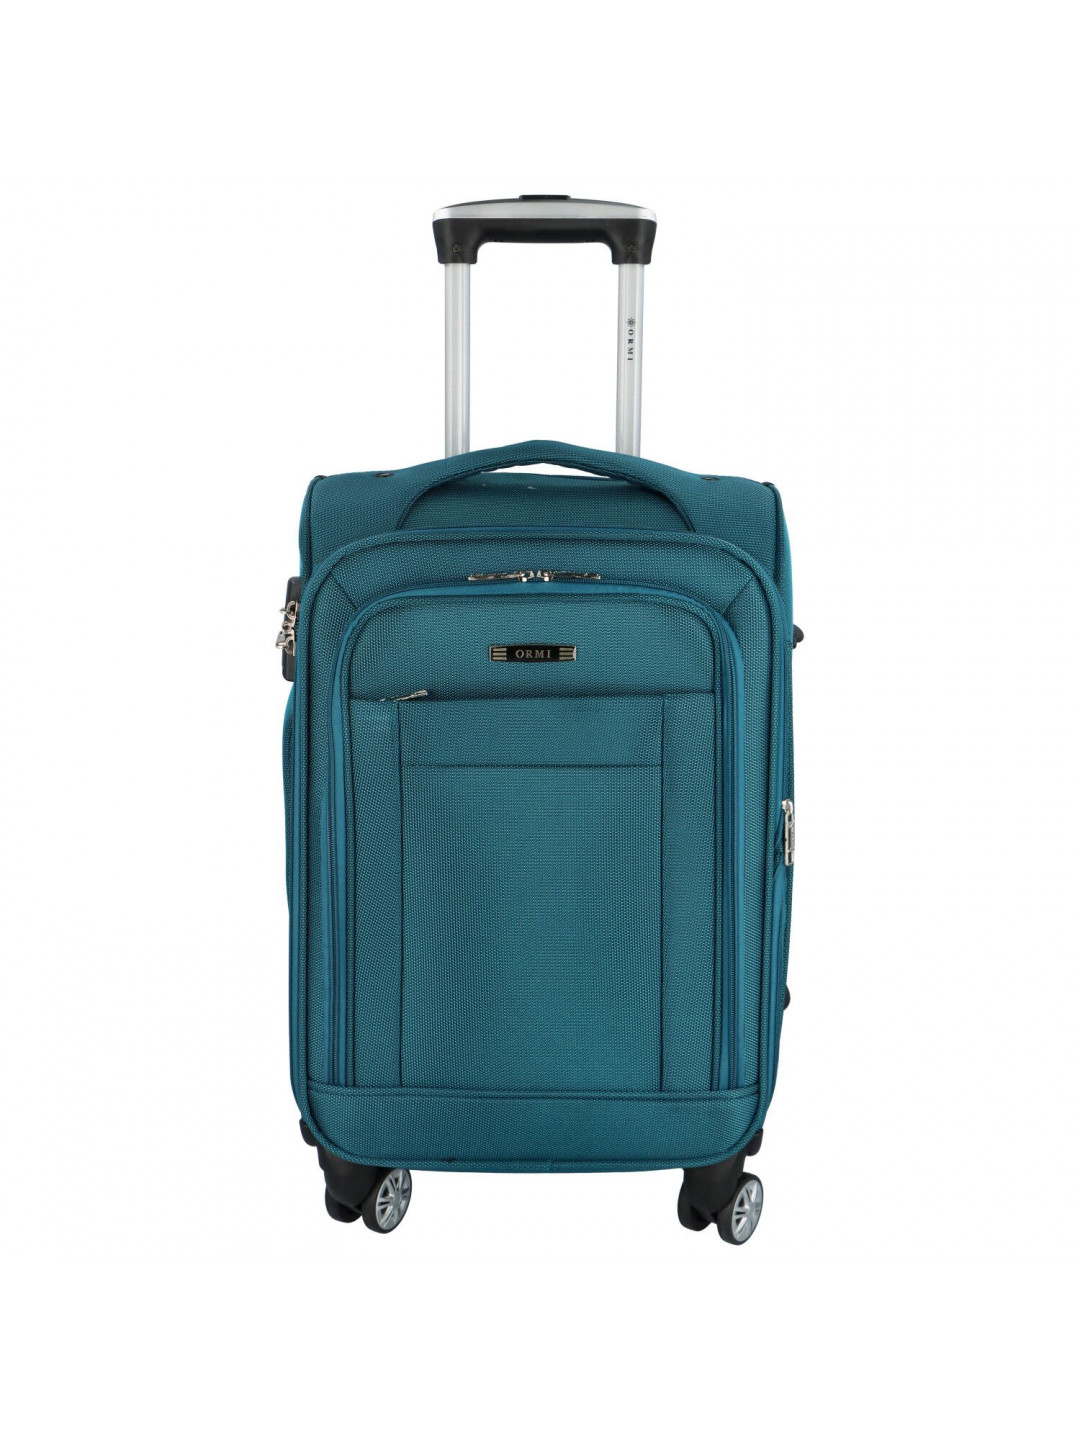 Látkový kufr ORMI Donar velikost S modrozelená